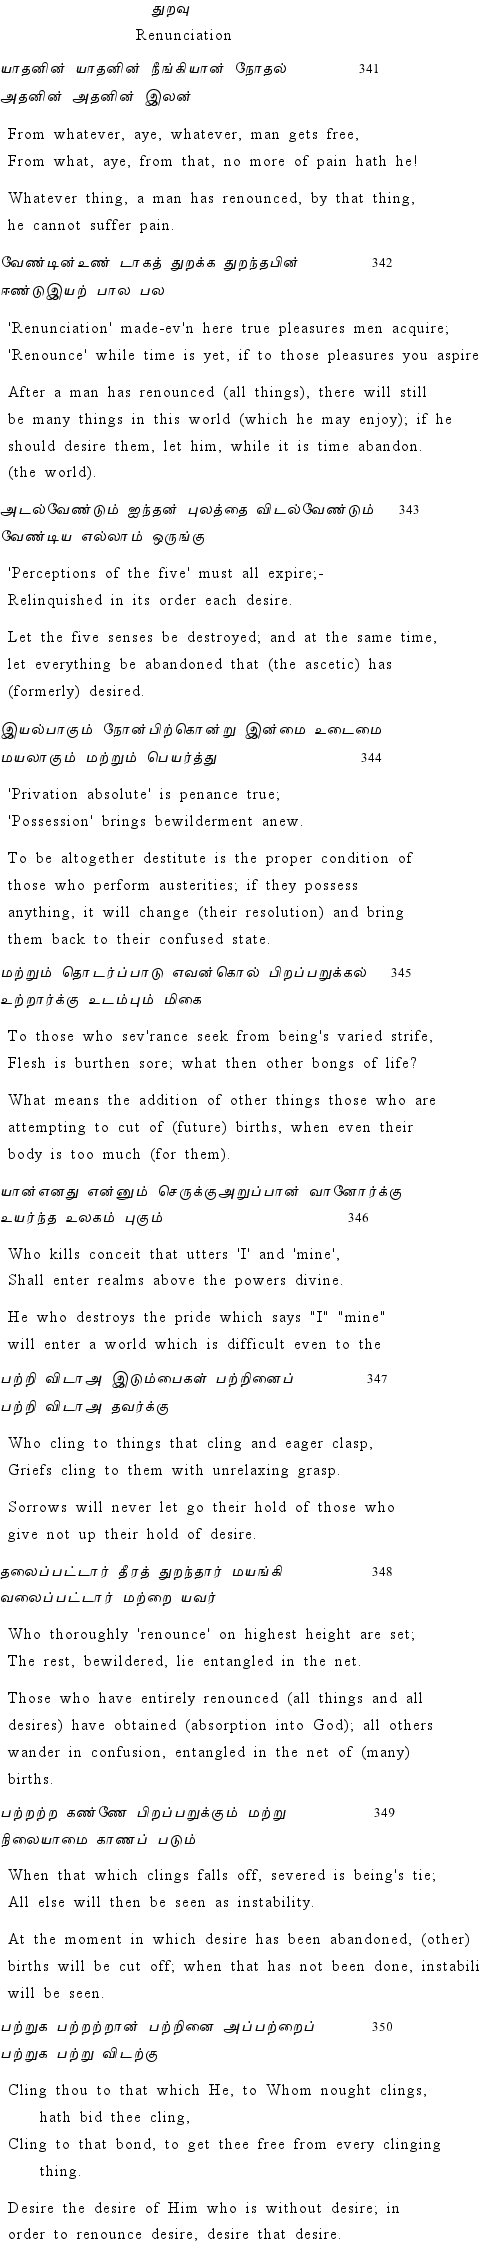 Text of Adhikaram 35